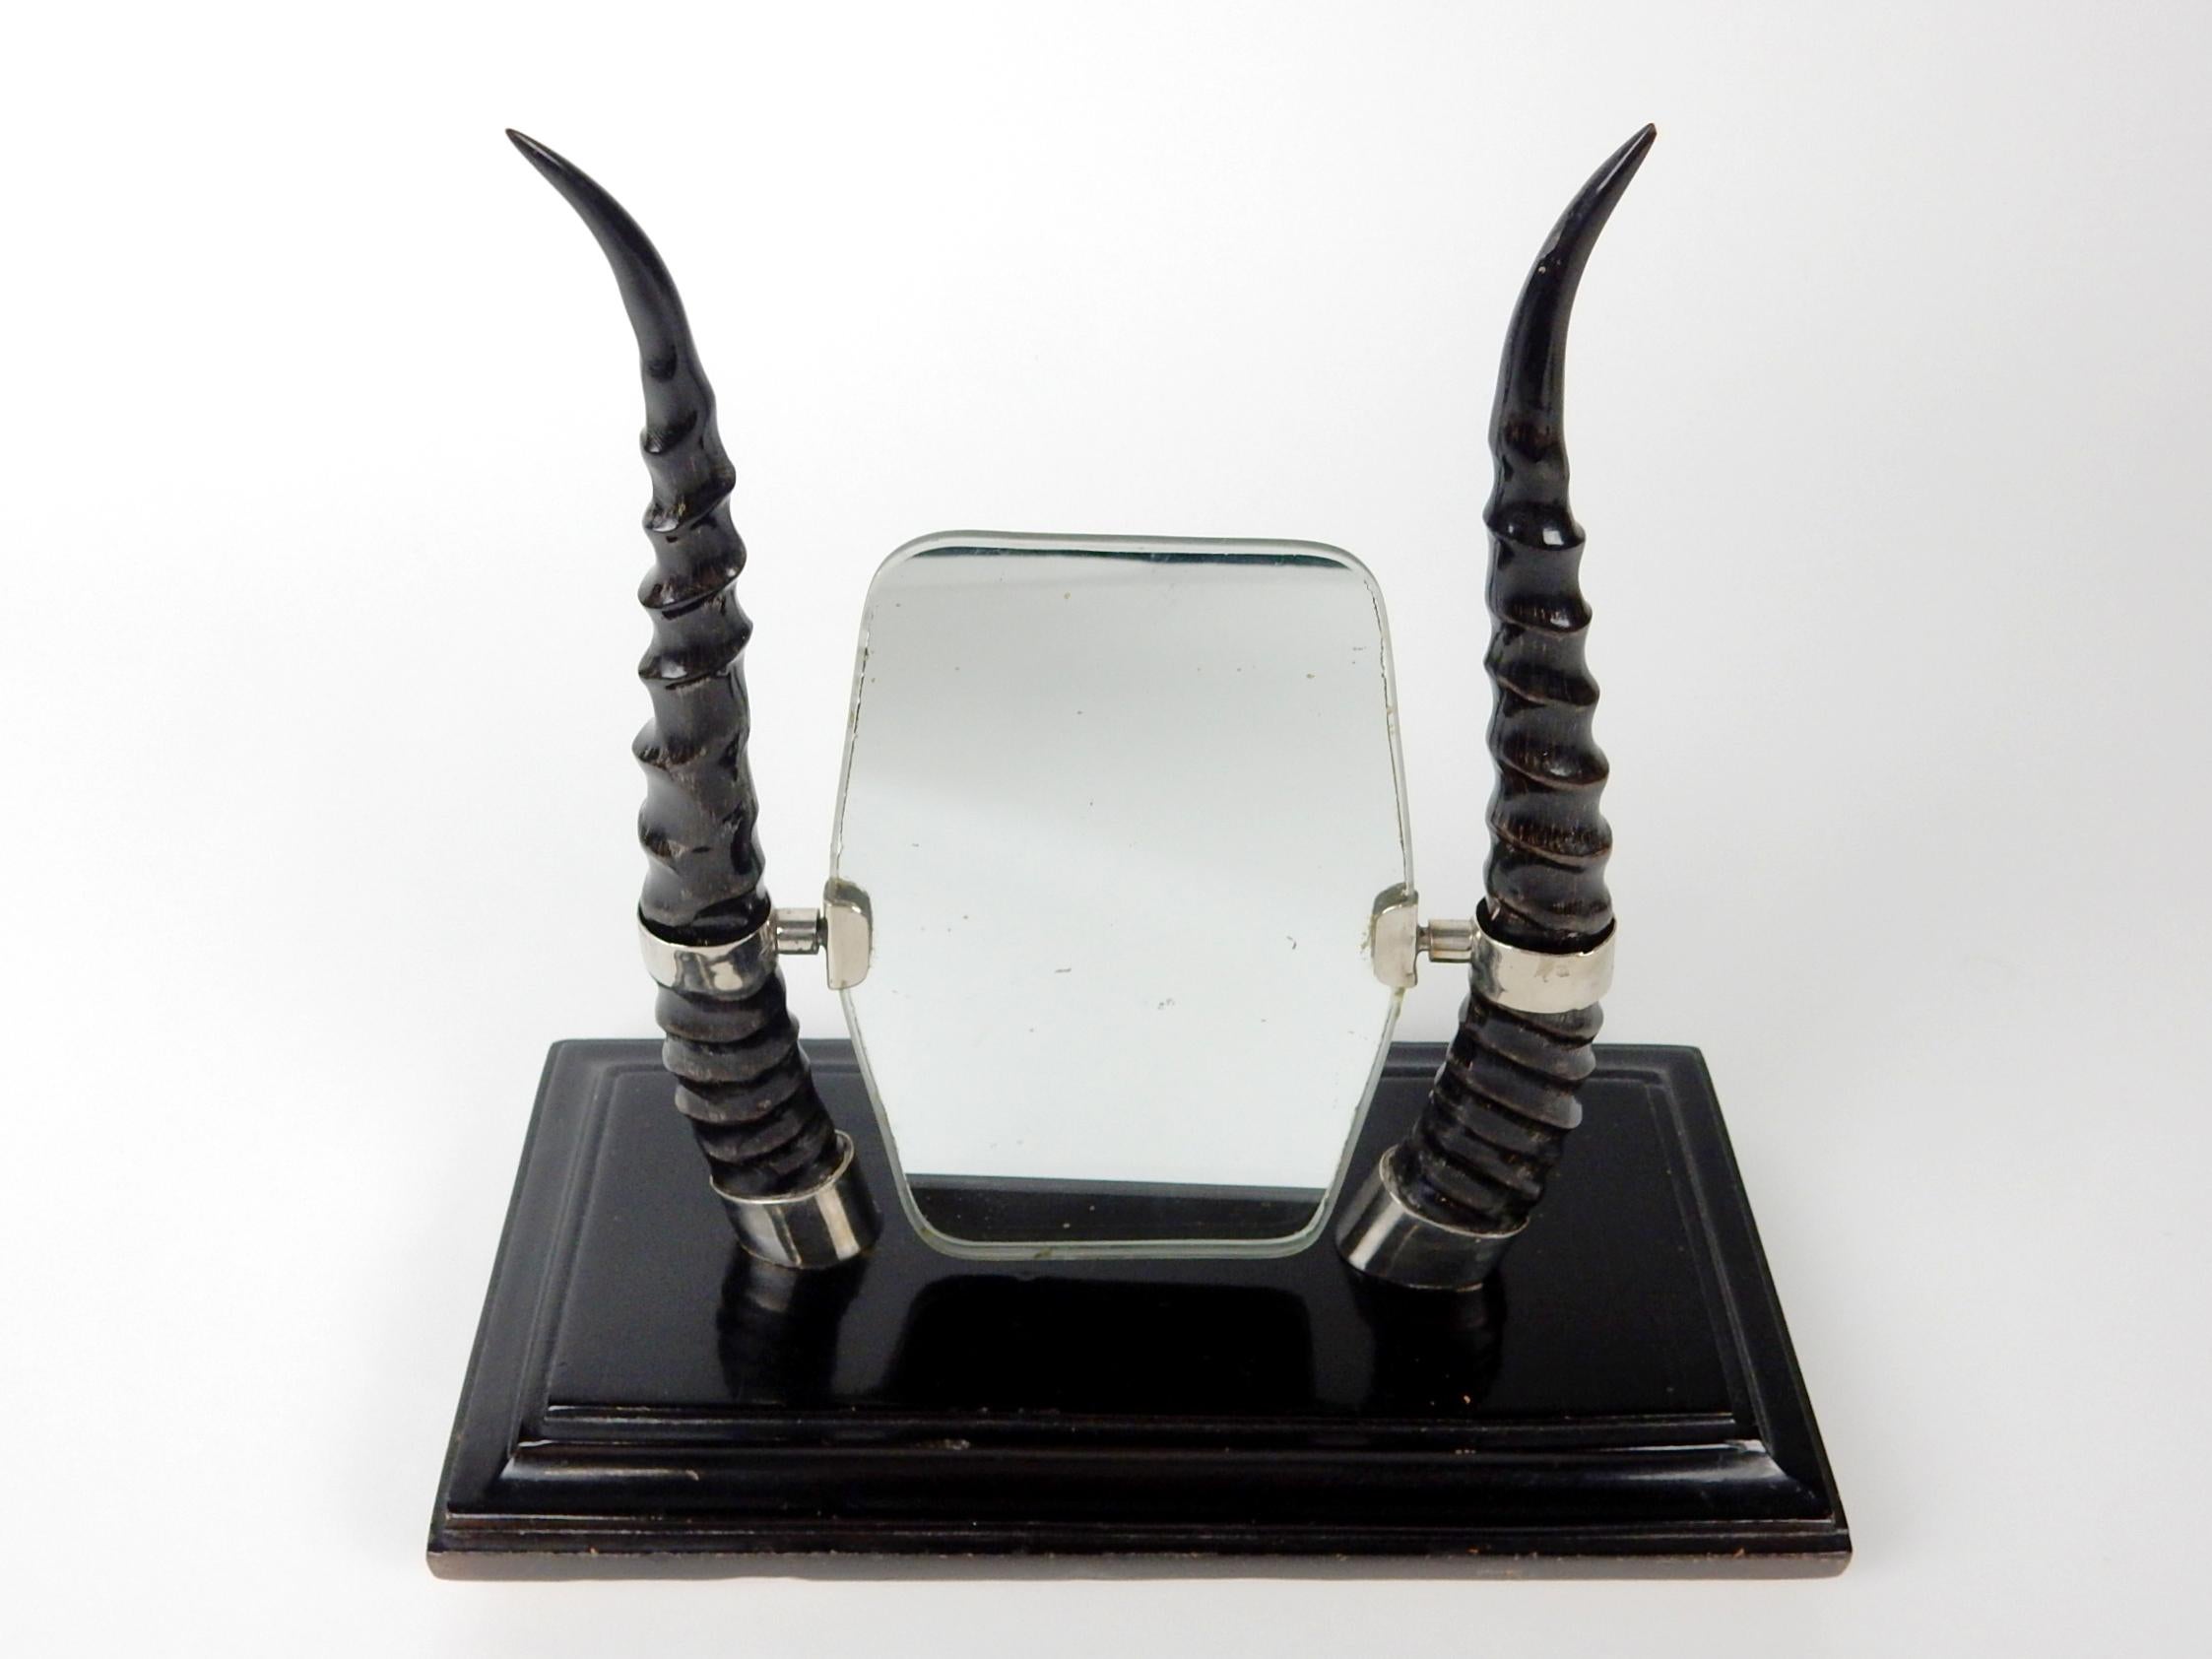 Miroir de table exotique de l'époque Art Déco en corne d'antilope africaine et argent monnayé martelé.
Charmante pièce décorative à petite échelle datant des années 1940. Dimensions : Hauteur de 12-1/2